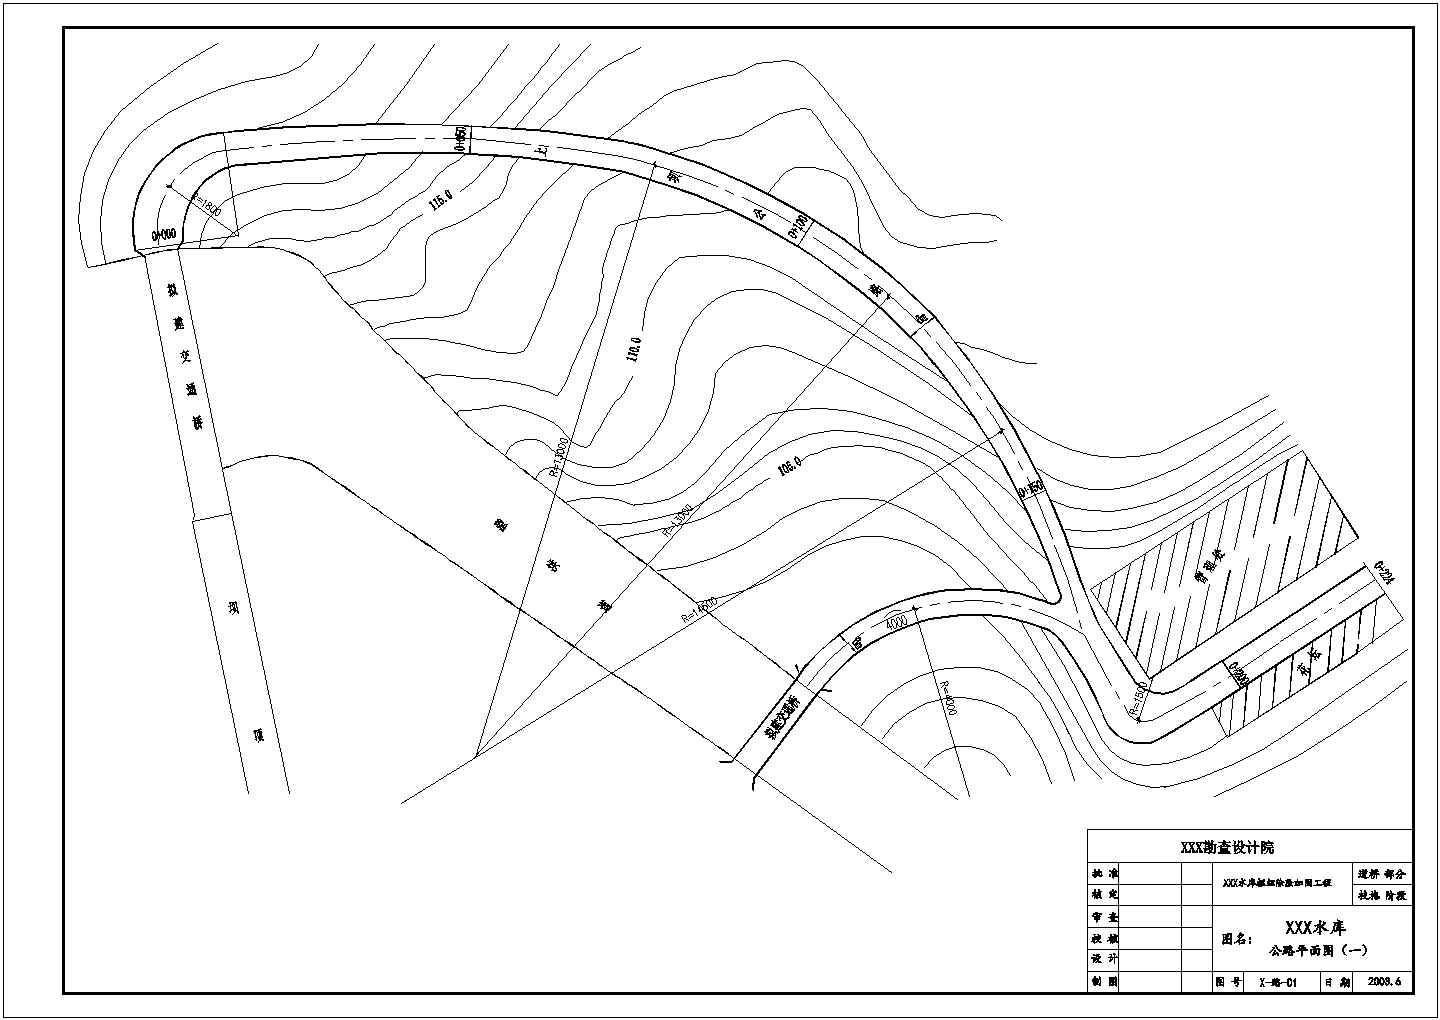 中型水库枢纽除险加固初步设计图（编制于2010年以前）